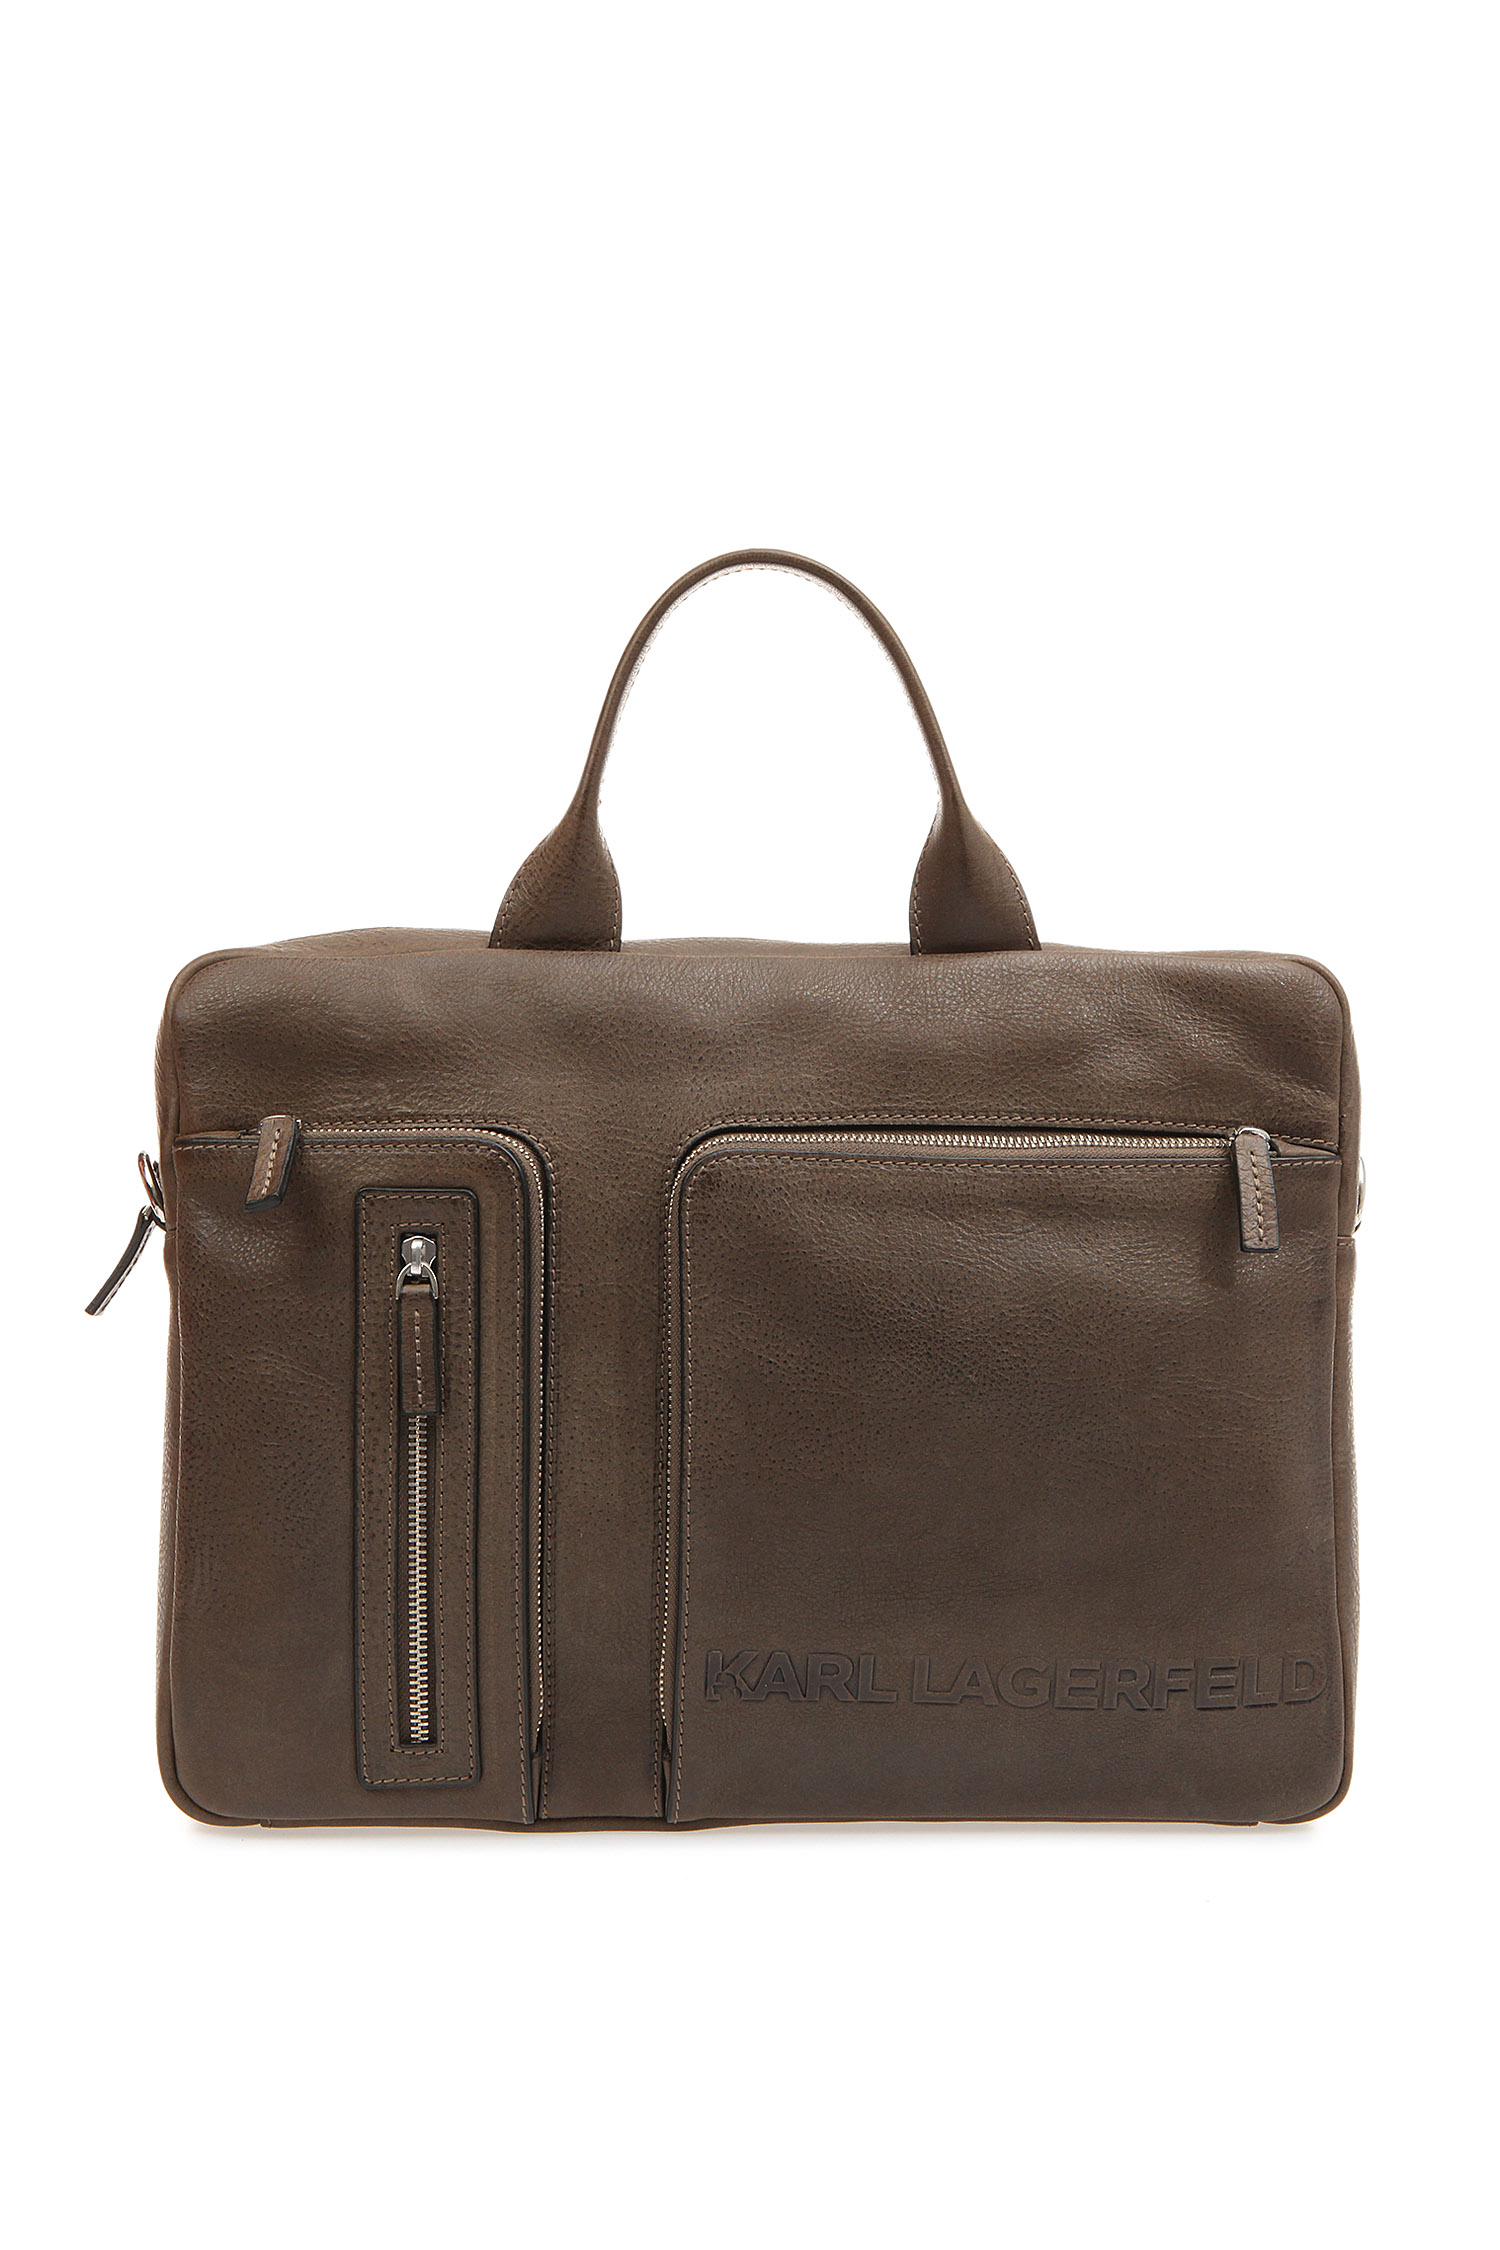 Мужская коричневая кожаная сумка для ноутбука Karl Lagerfeld 582455.815902;550